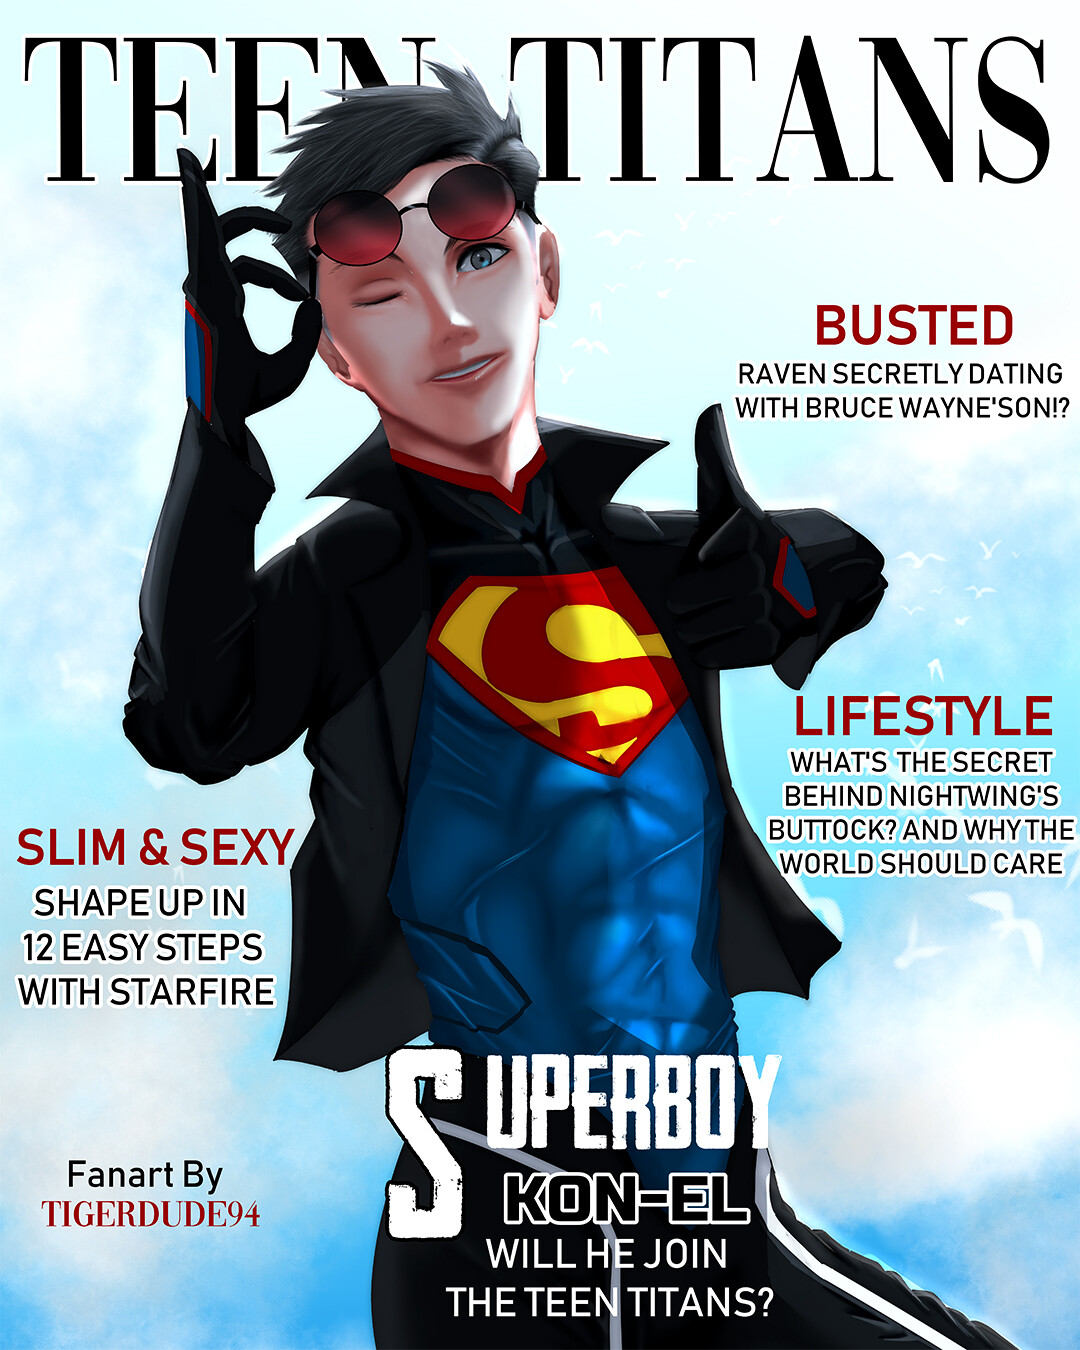 Reign of the Supermen Art by tigerdude94